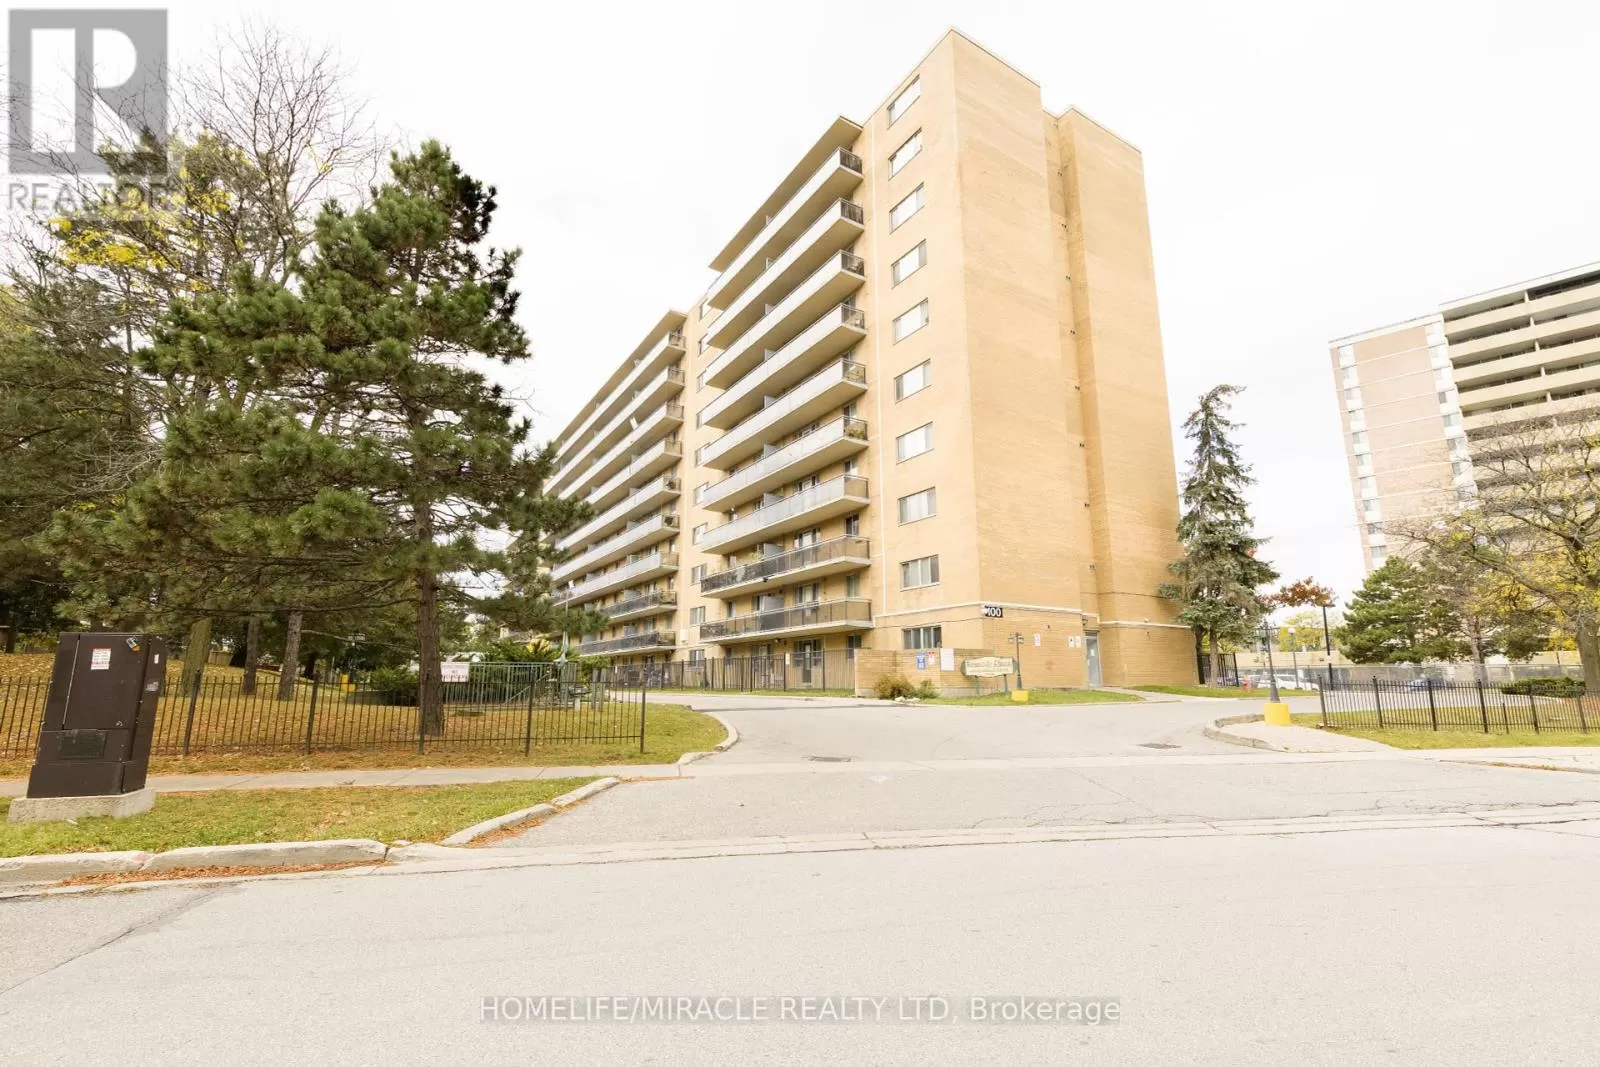 Apartment for rent: 617 - 100 Dundalk Drive, Toronto, Ontario M1P 4V2